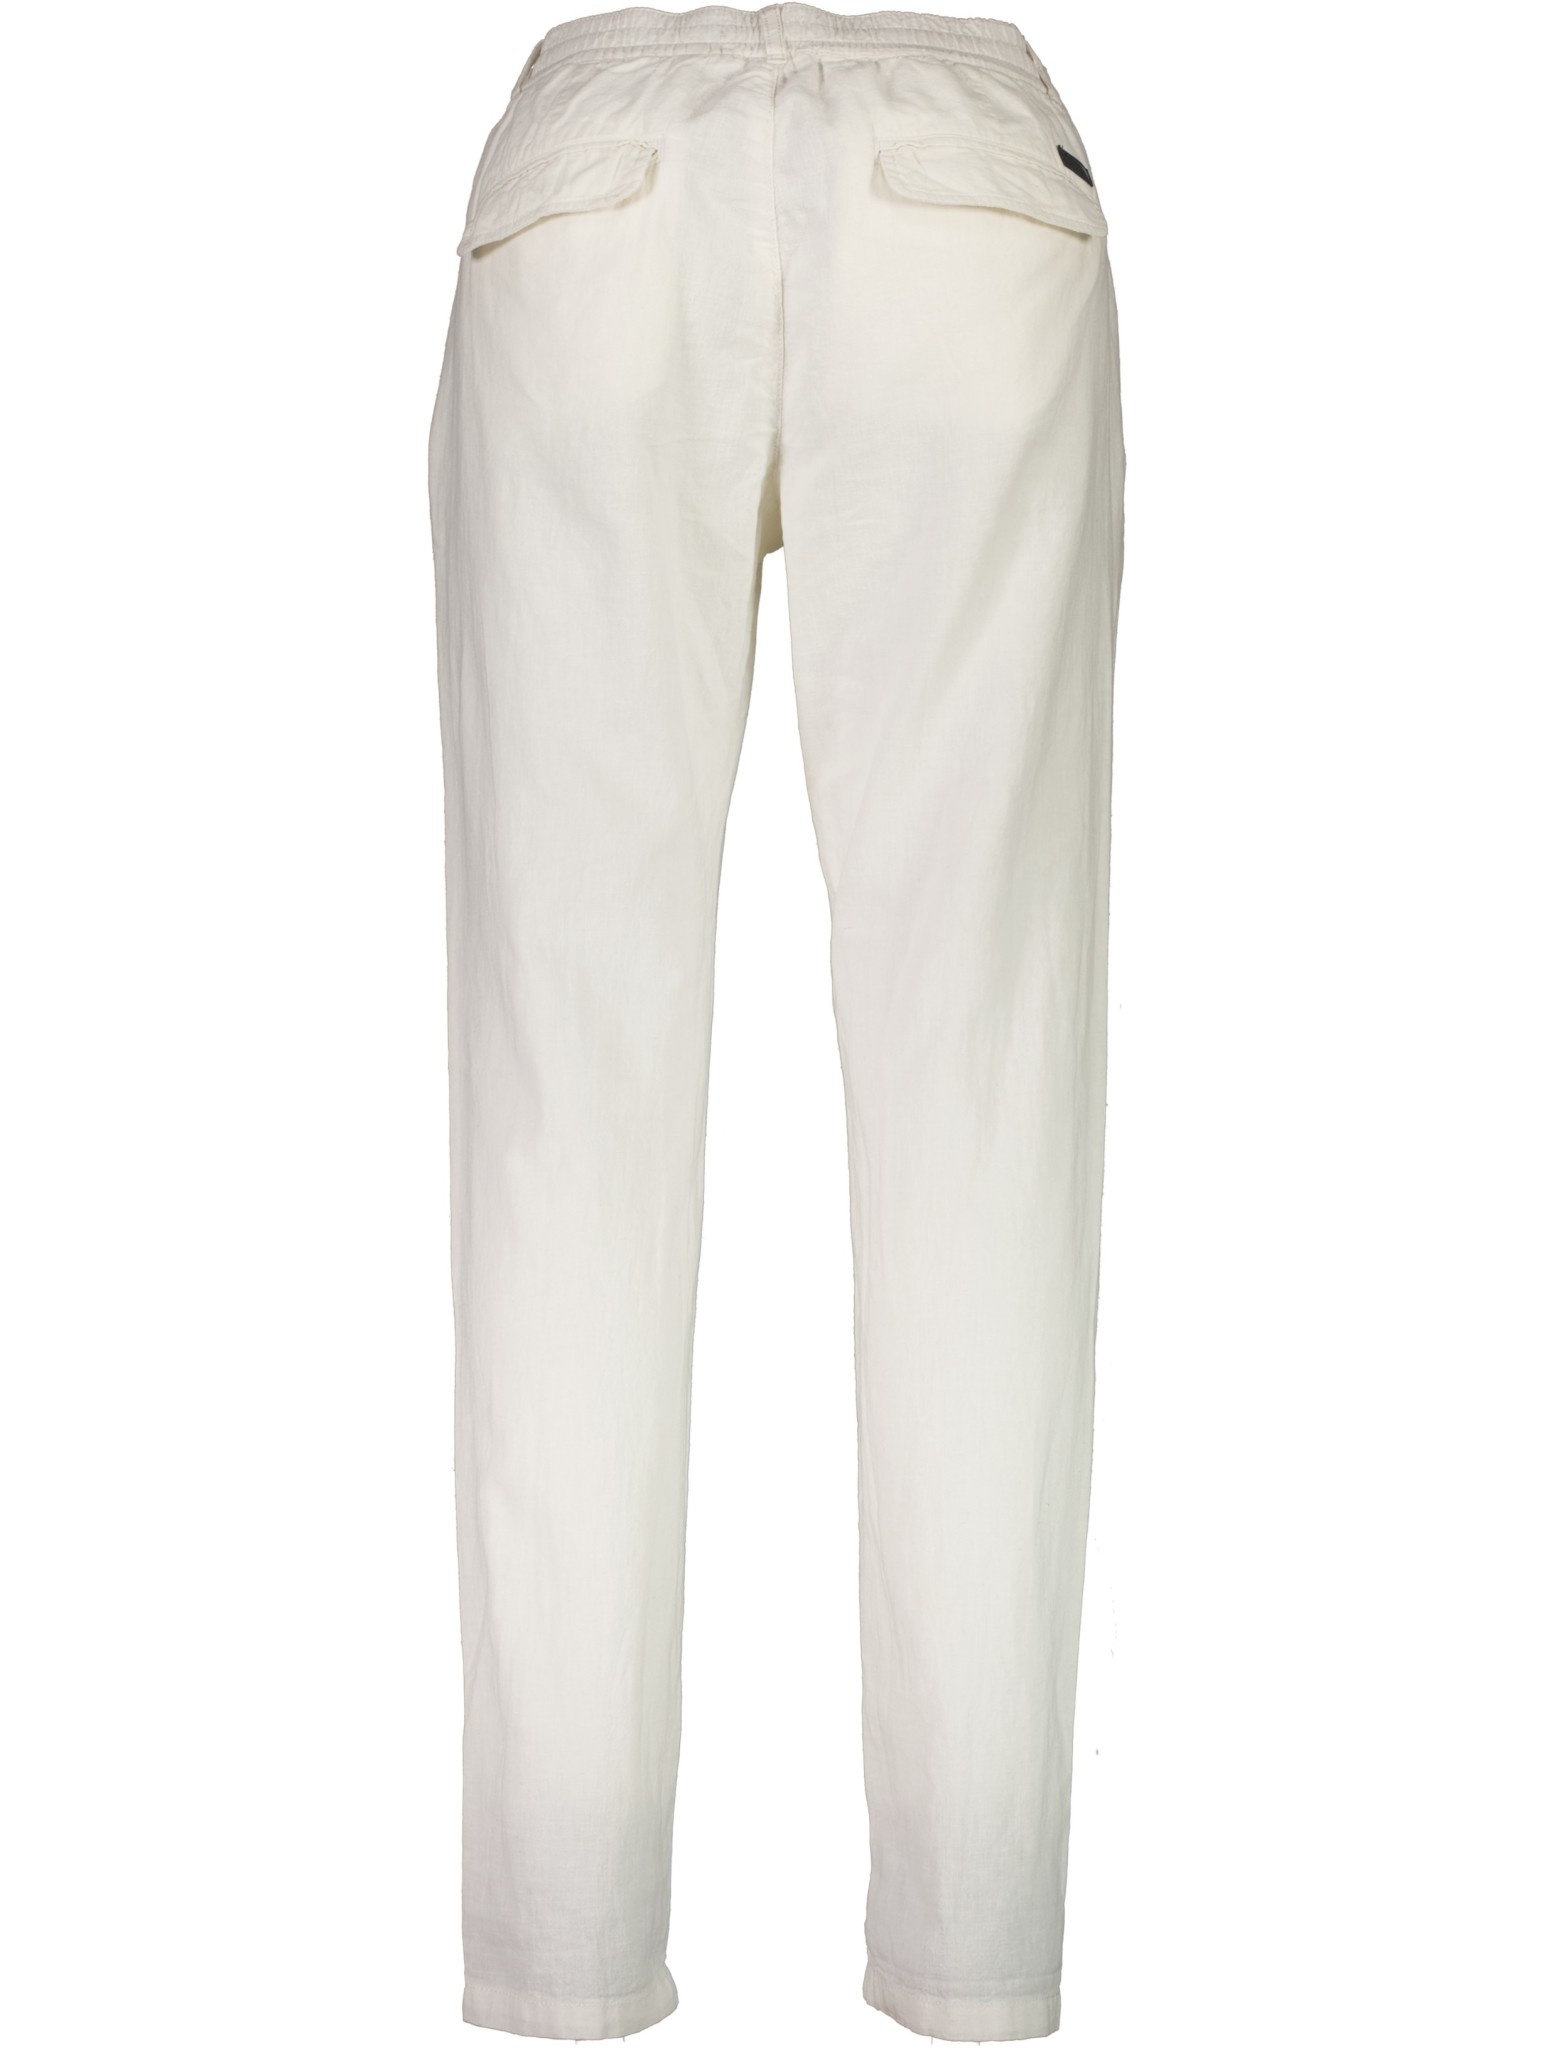 Linen Pants Style: 30-008003US - LINDBERGH